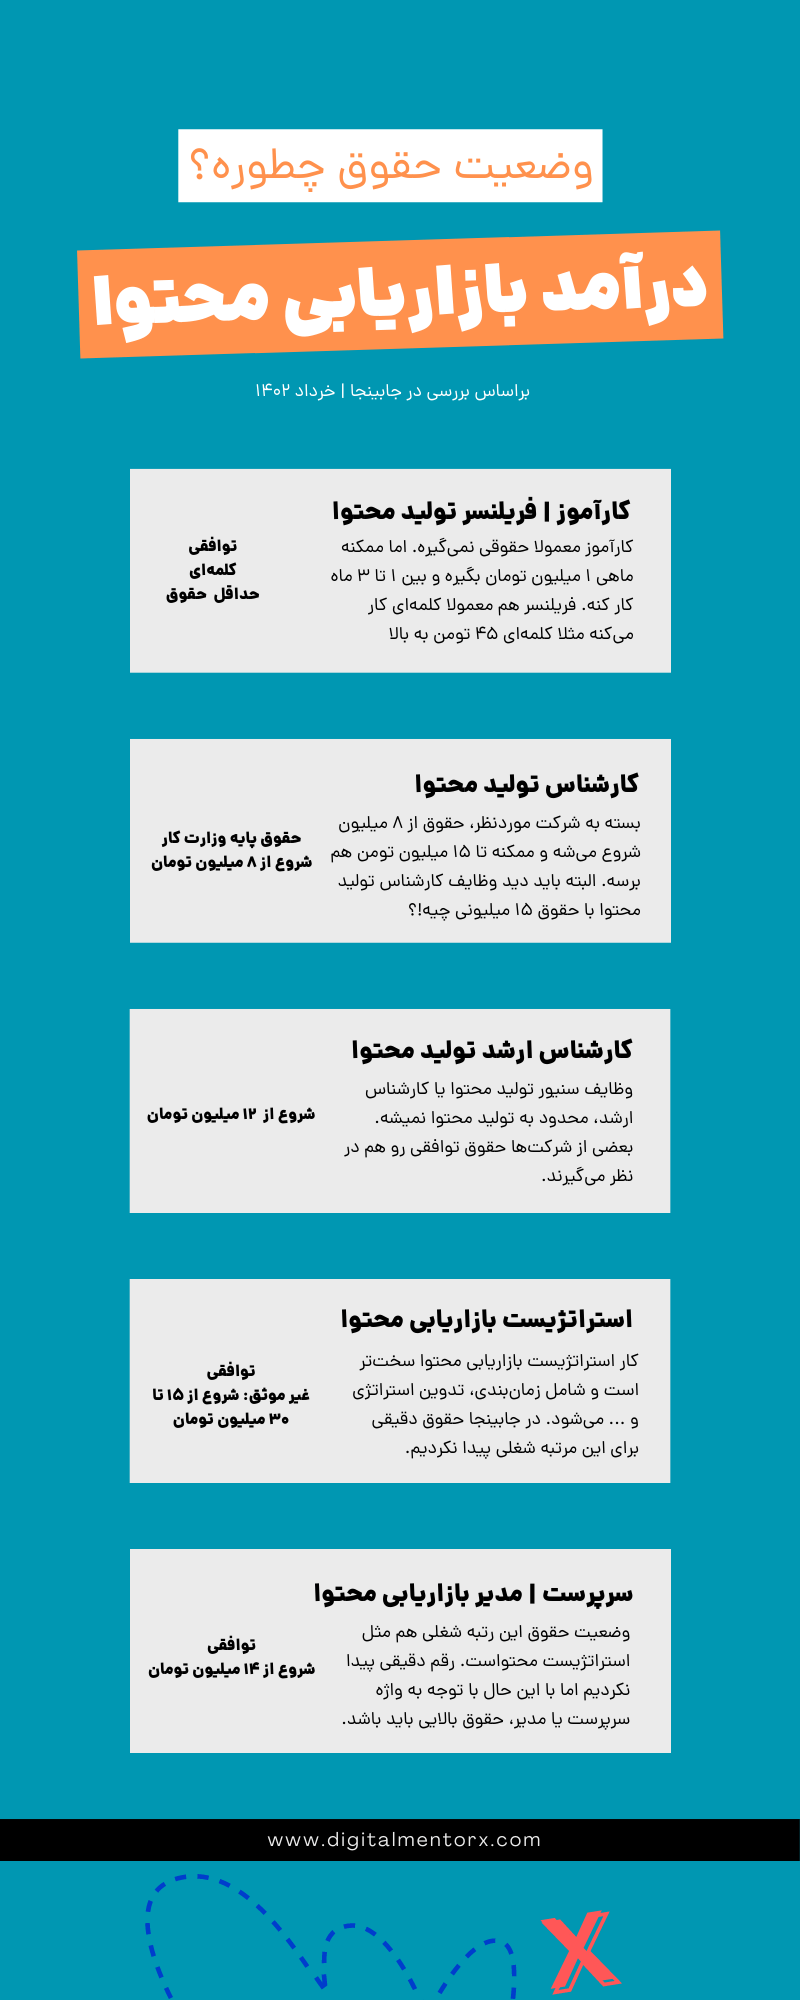 حقوق تولید محتوا و درآمد کارشناس تولید محتوا در ایران